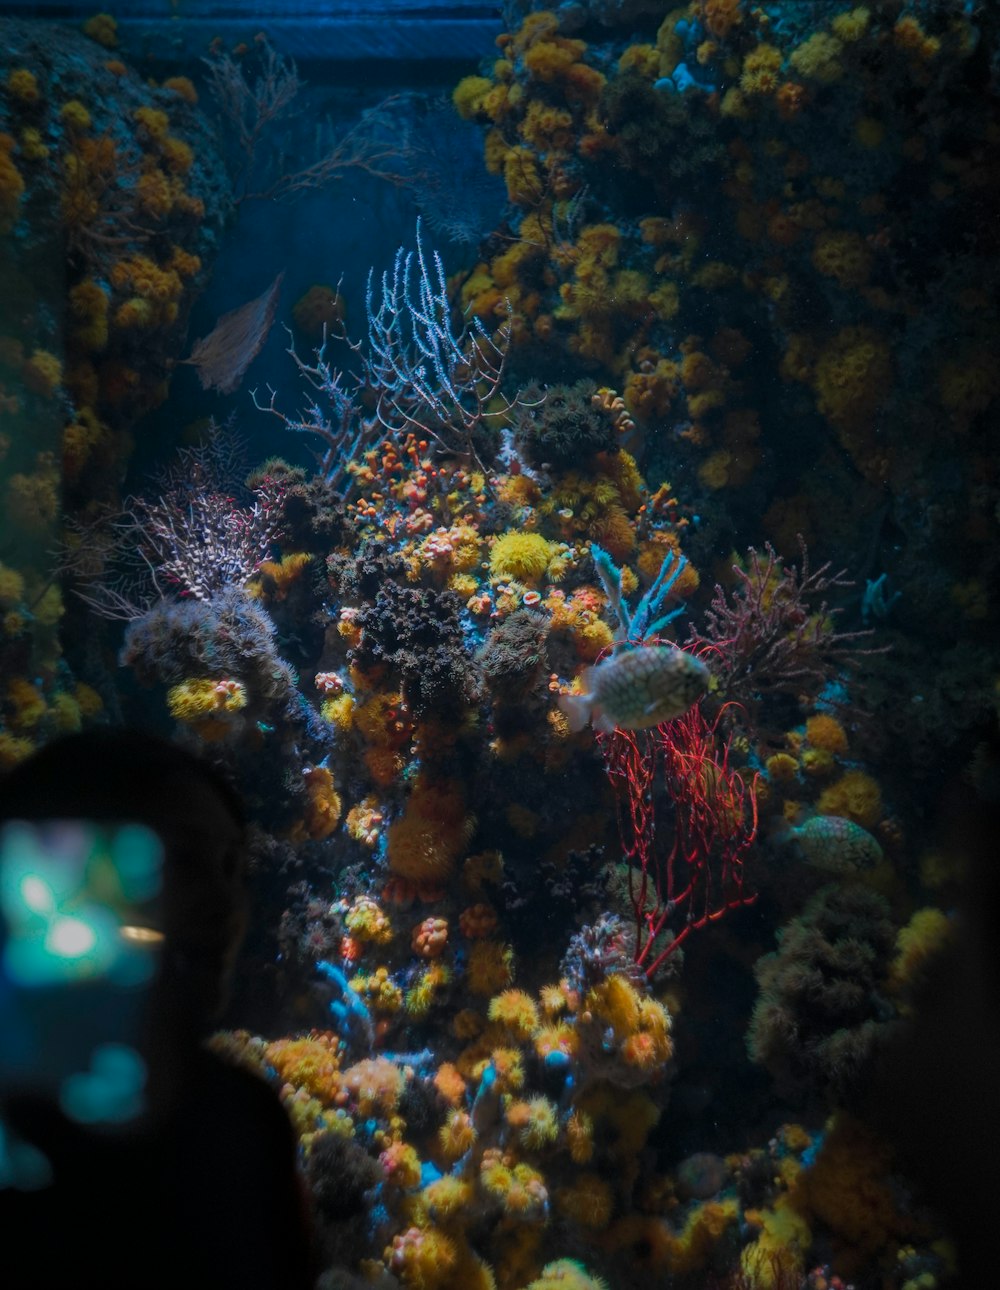 형형색색의 산호가 가득한 대형 수족관